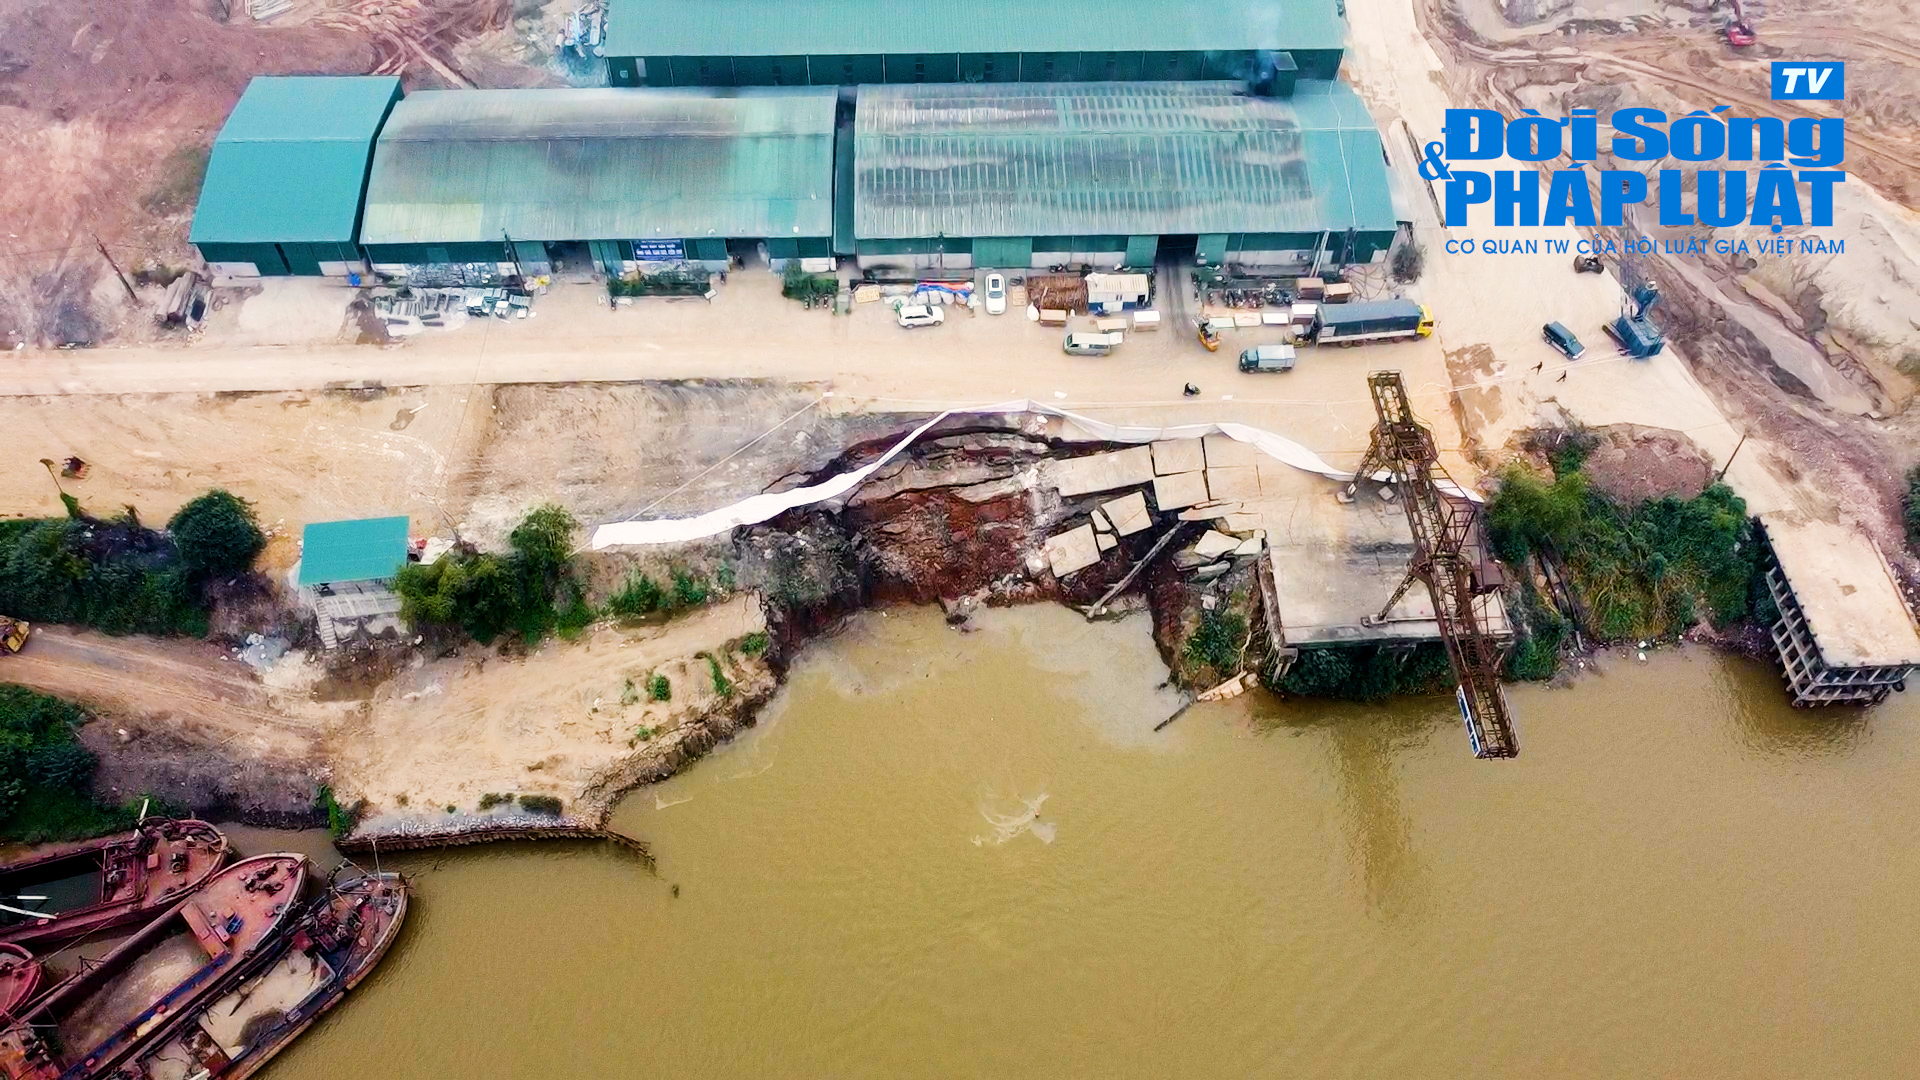 Media - Sạt lở nghiêm trọng tại cảng Hồng Vân (Hà Nội) sau khi người dân phản ánh về tình trạng khai thác cát